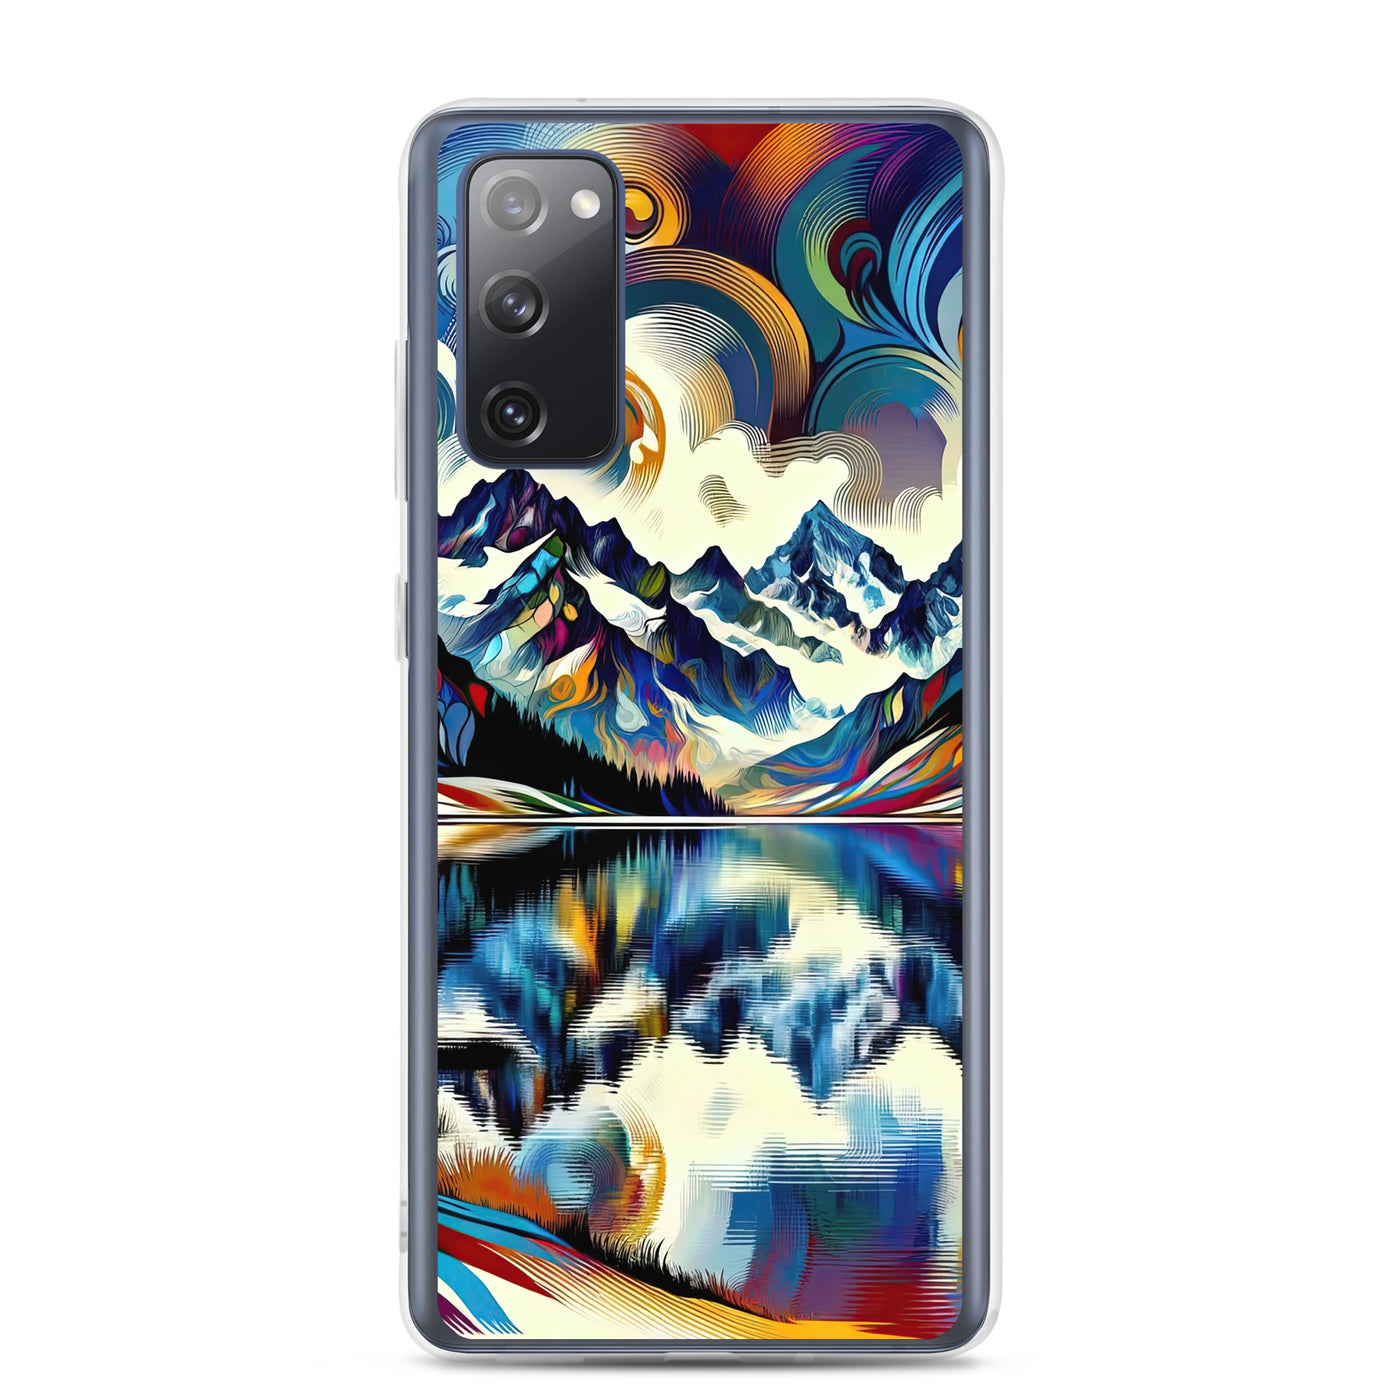 Alpensee im Zentrum eines abstrakt-expressionistischen Alpen-Kunstwerks - Samsung Schutzhülle (durchsichtig) berge xxx yyy zzz Samsung Galaxy S20 FE